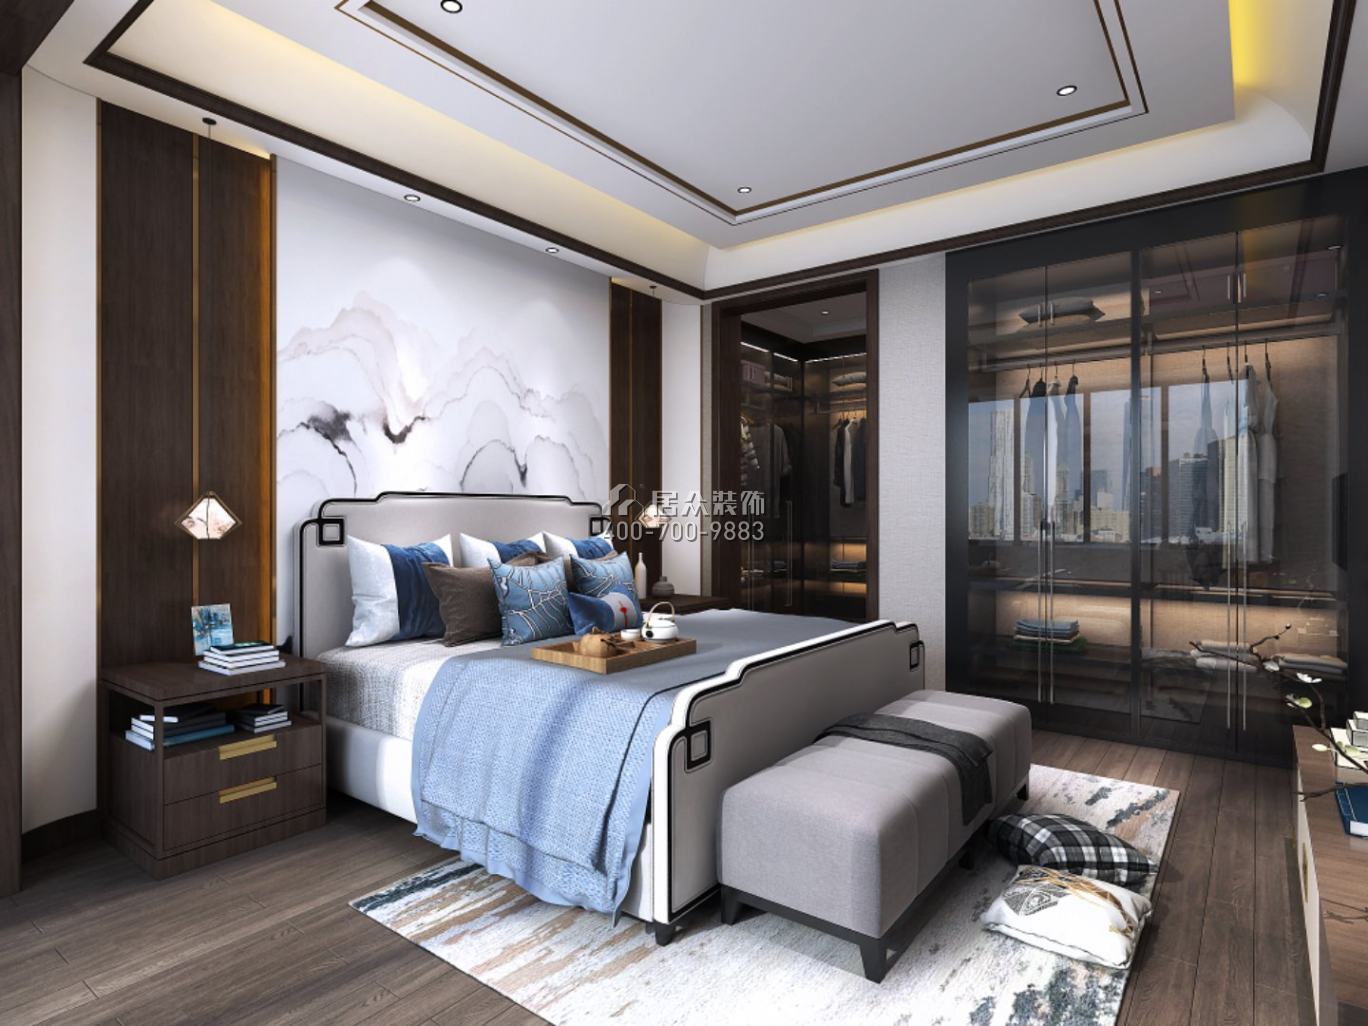 三一翡翠湾240平方米中式风格平层户型卧室装修效果图